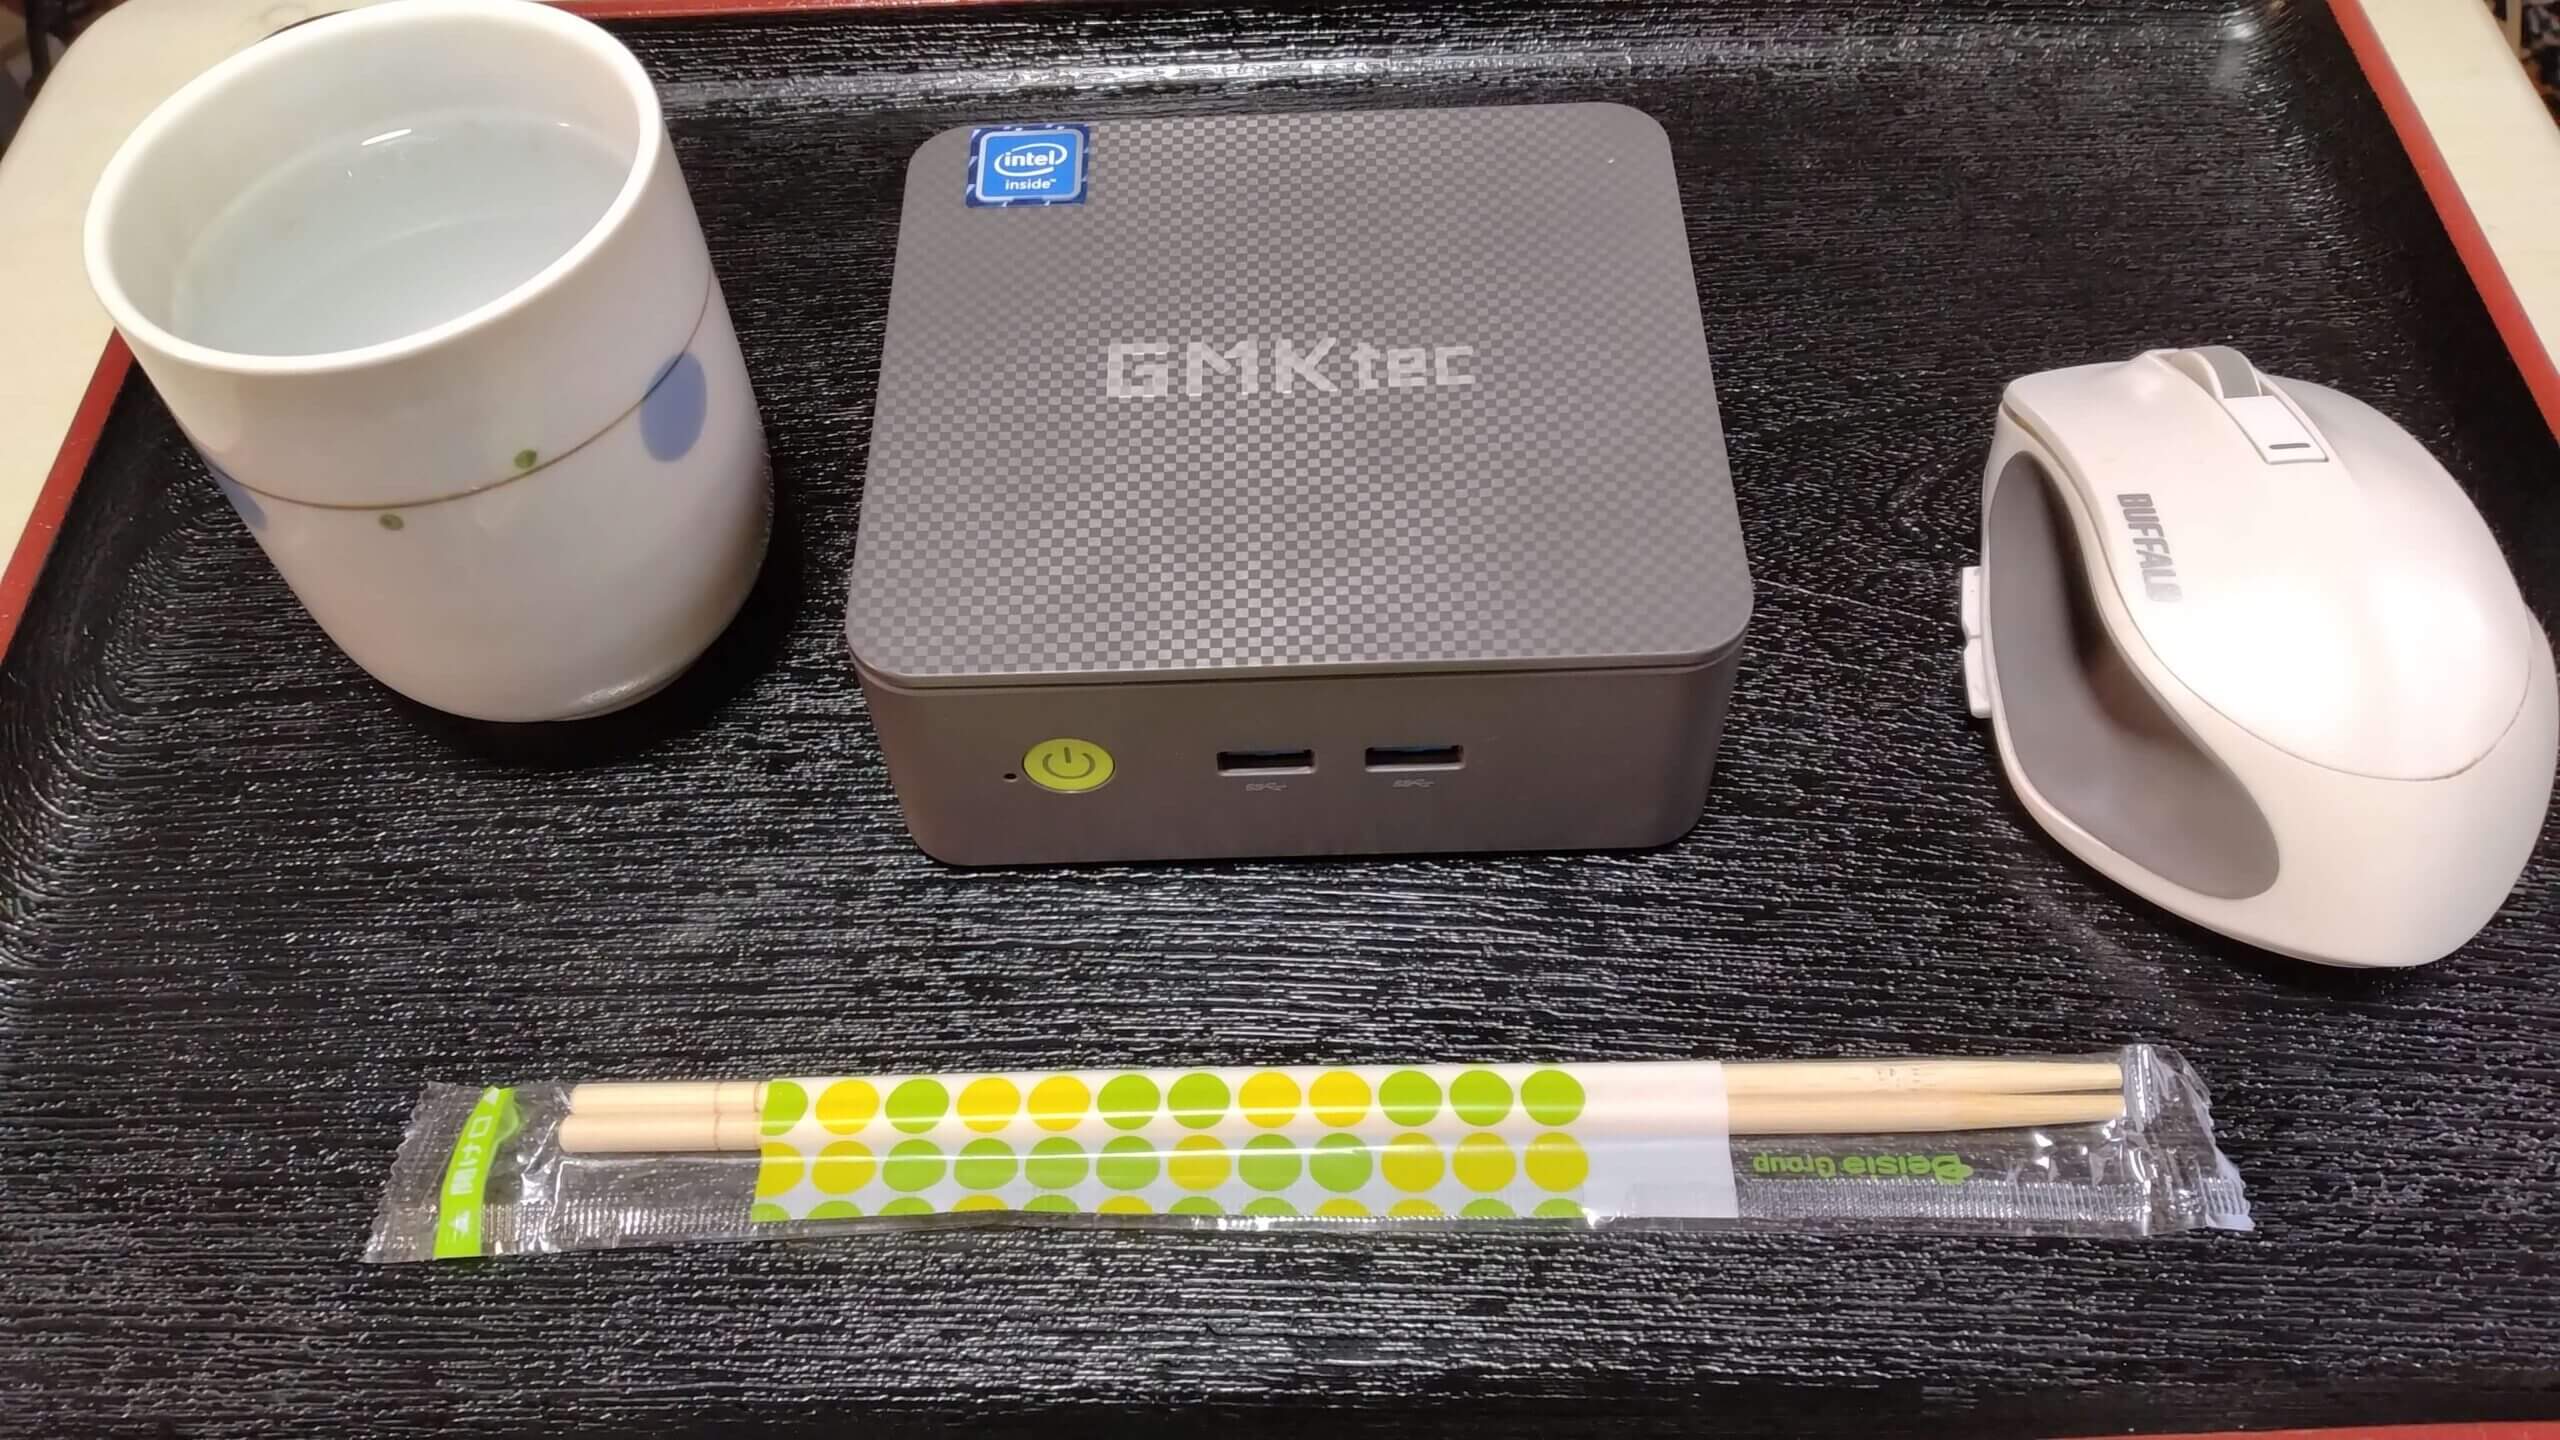 GMKtecのミニPCNUC BOX G3です。